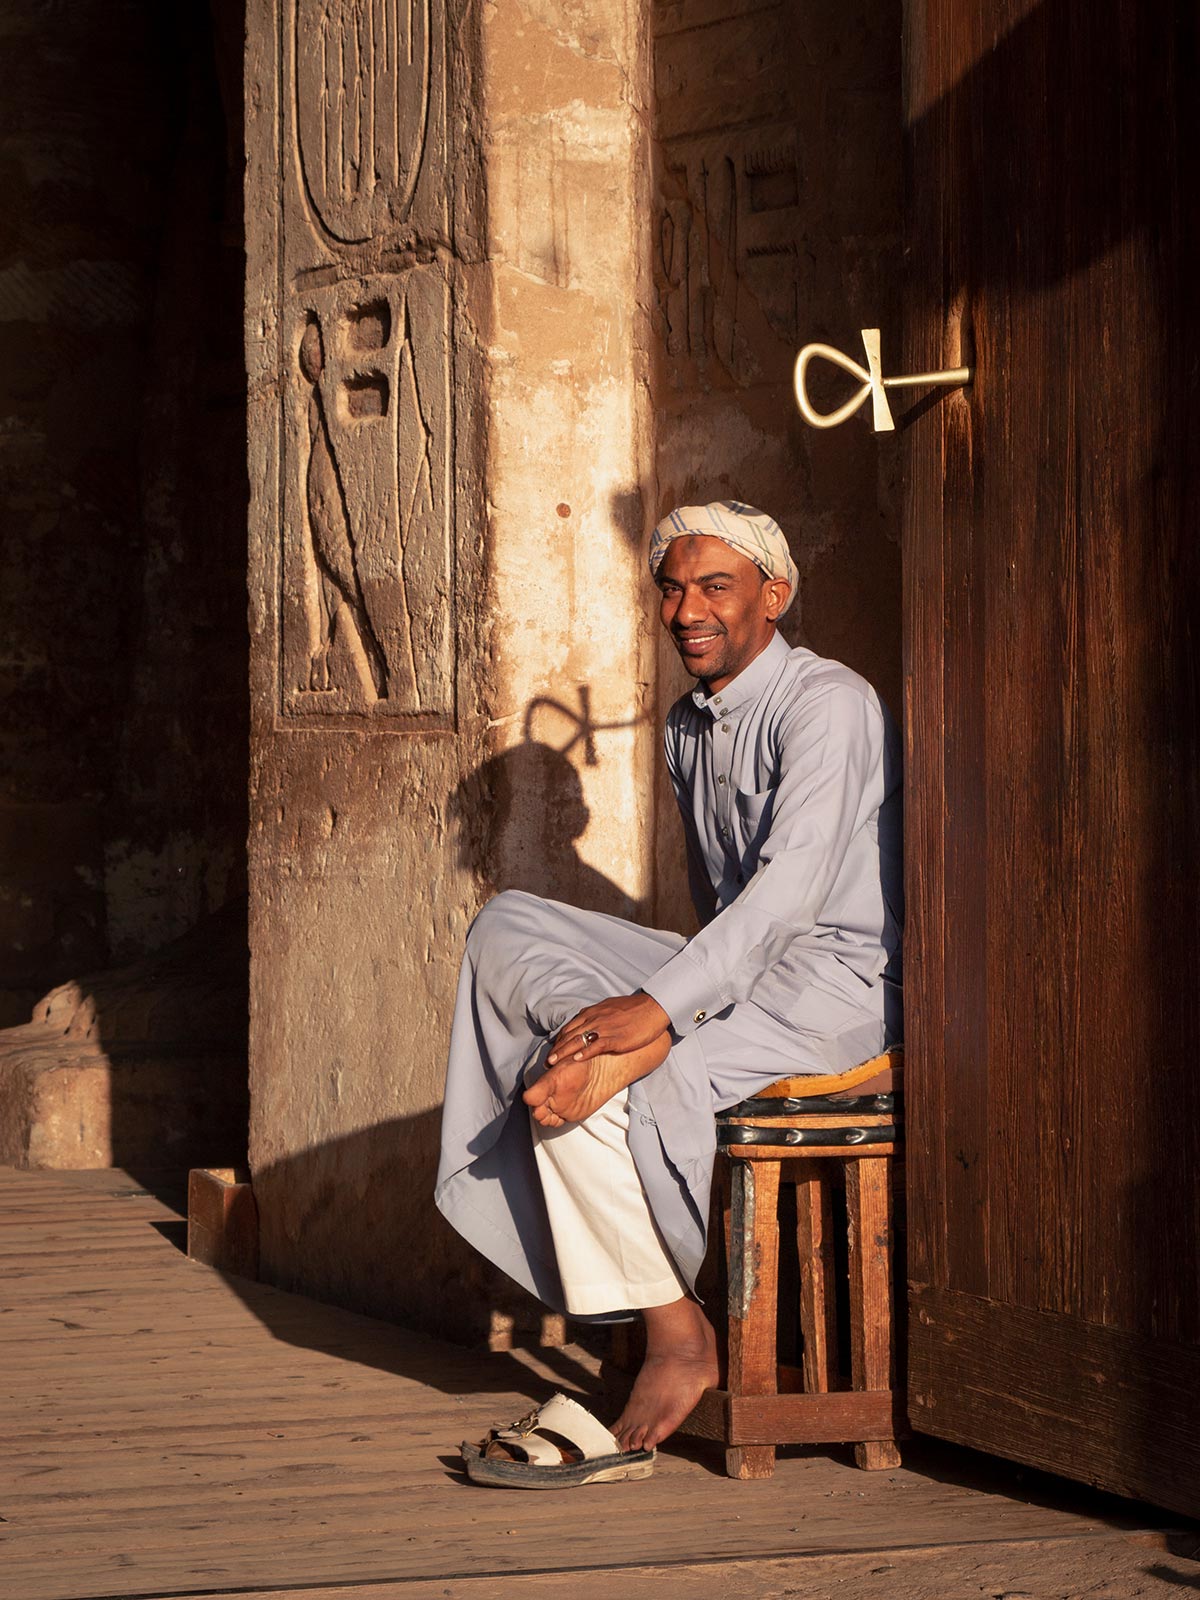 Gardien, Abou Simbel, Égypte / Guardian, Abu Simbel, Egypt